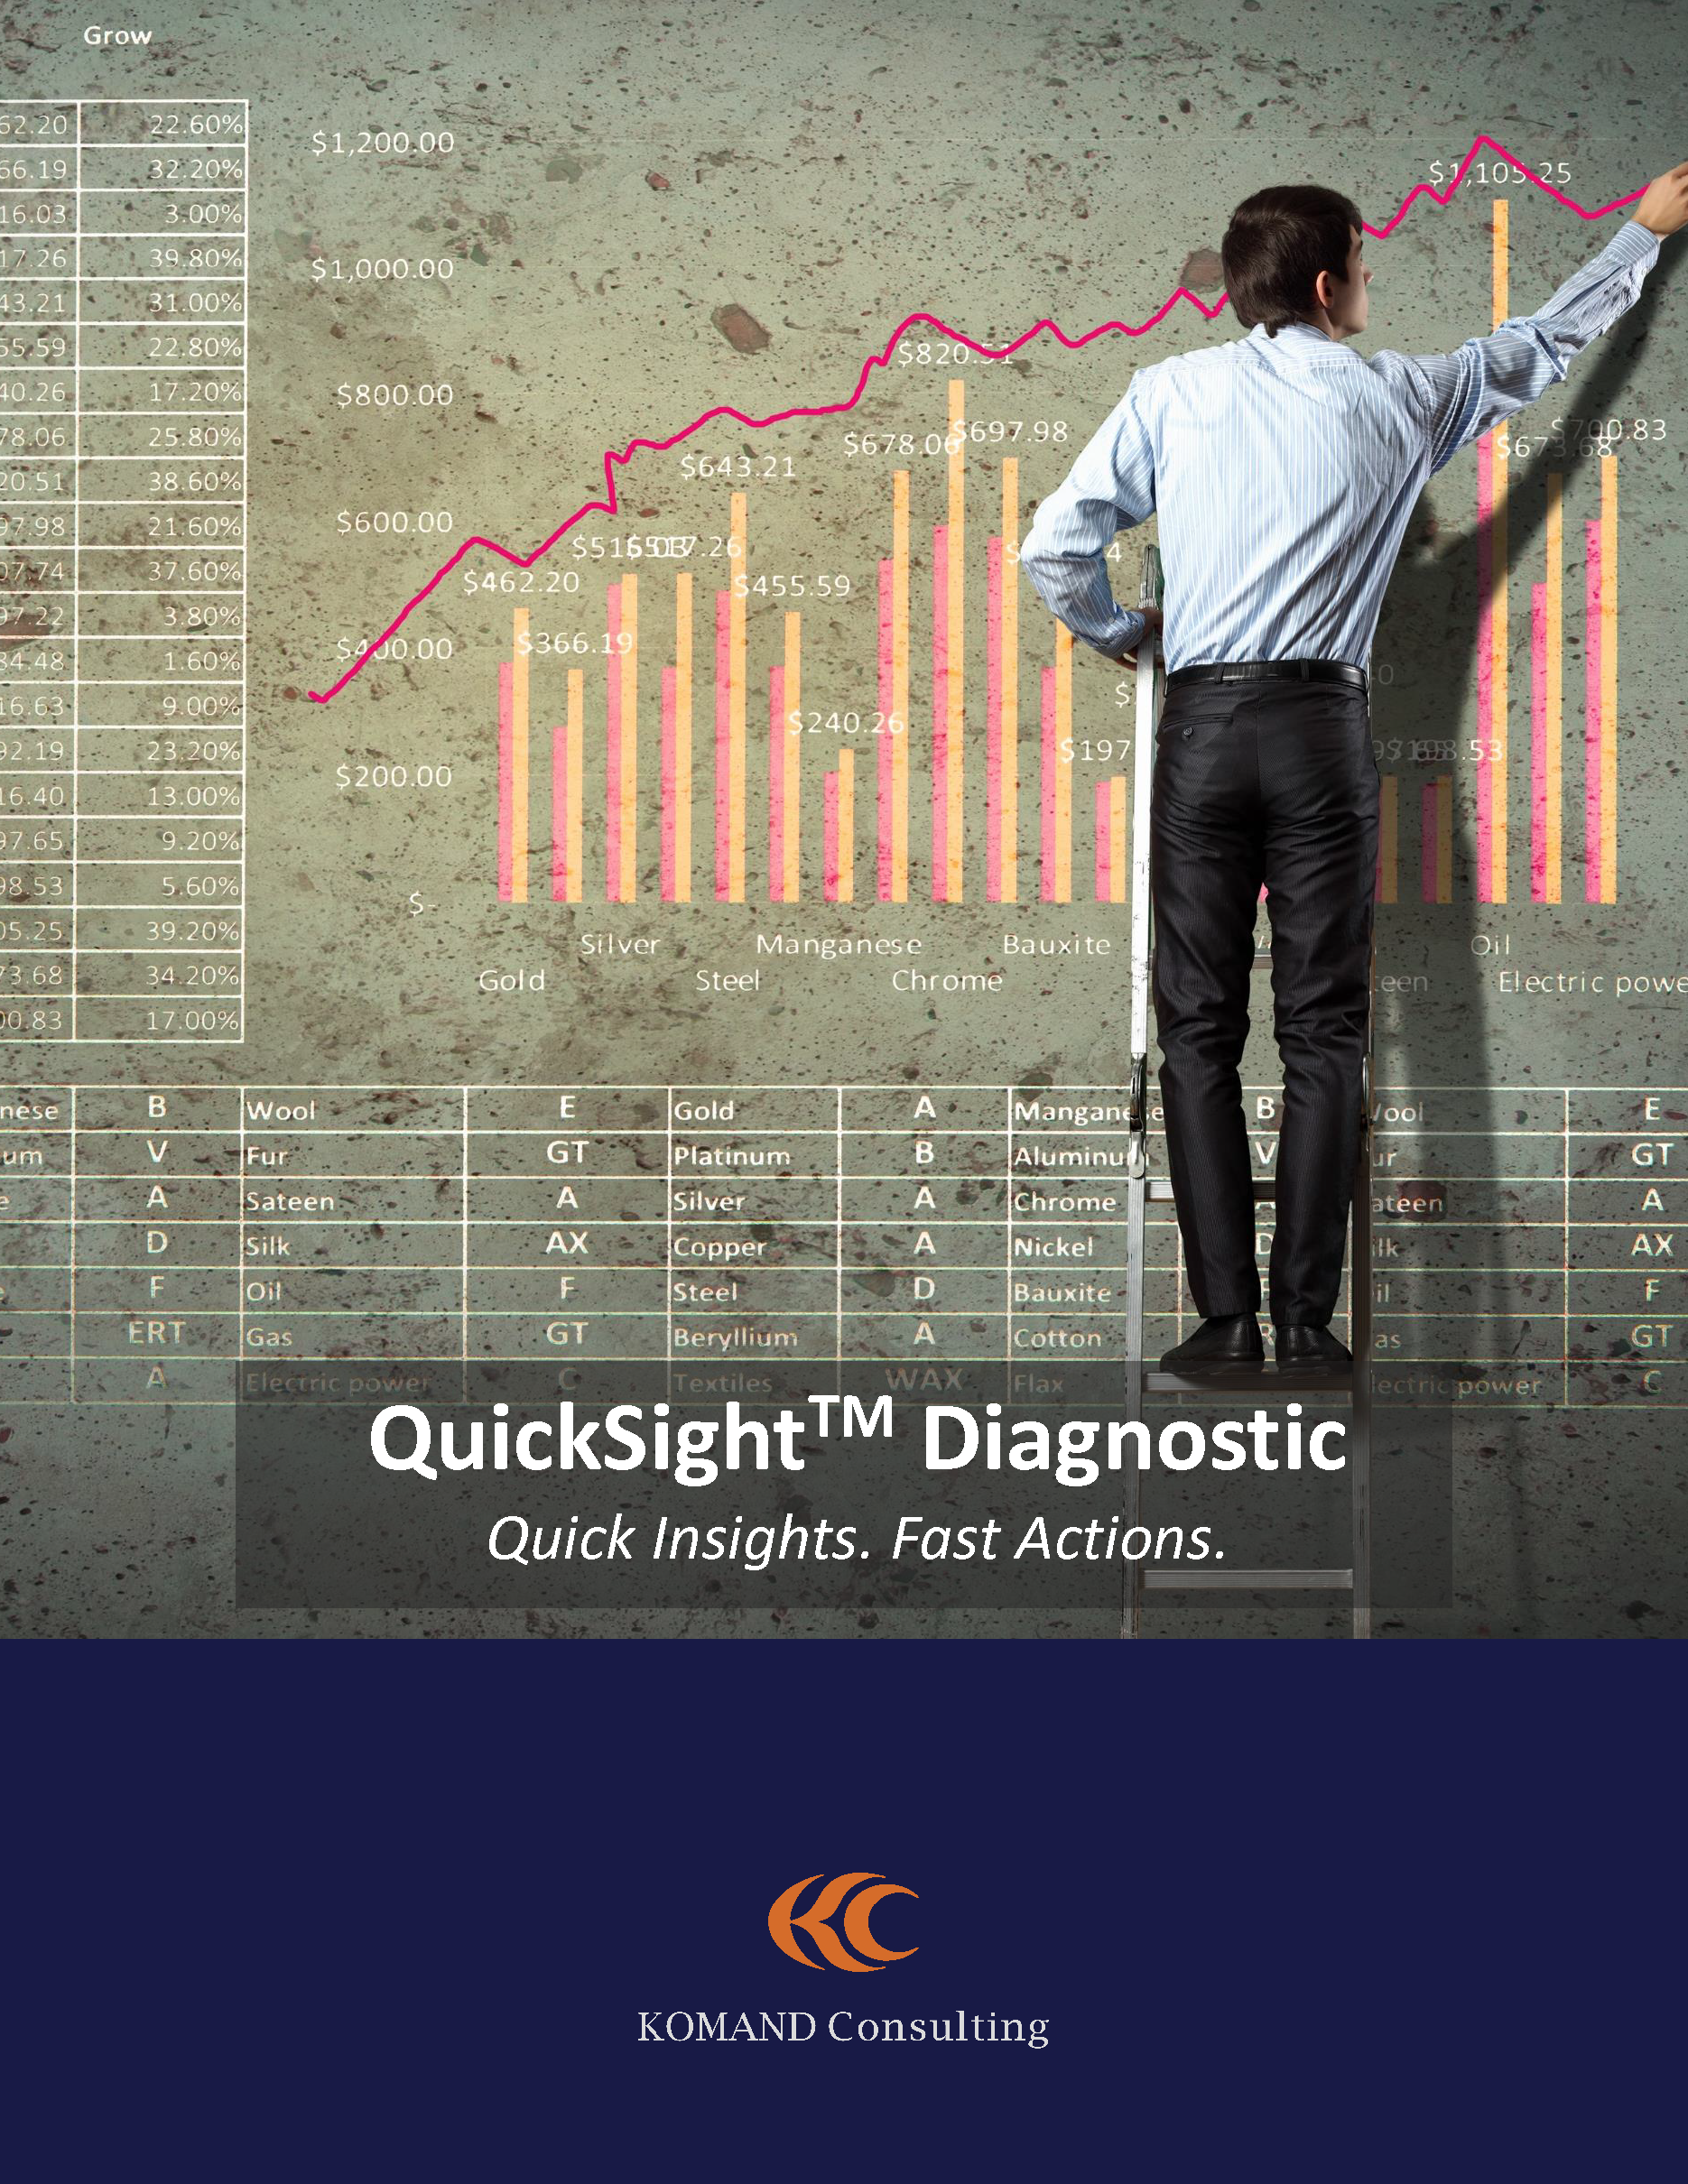 KOMAND - QuickSight Diagnostic - Read More